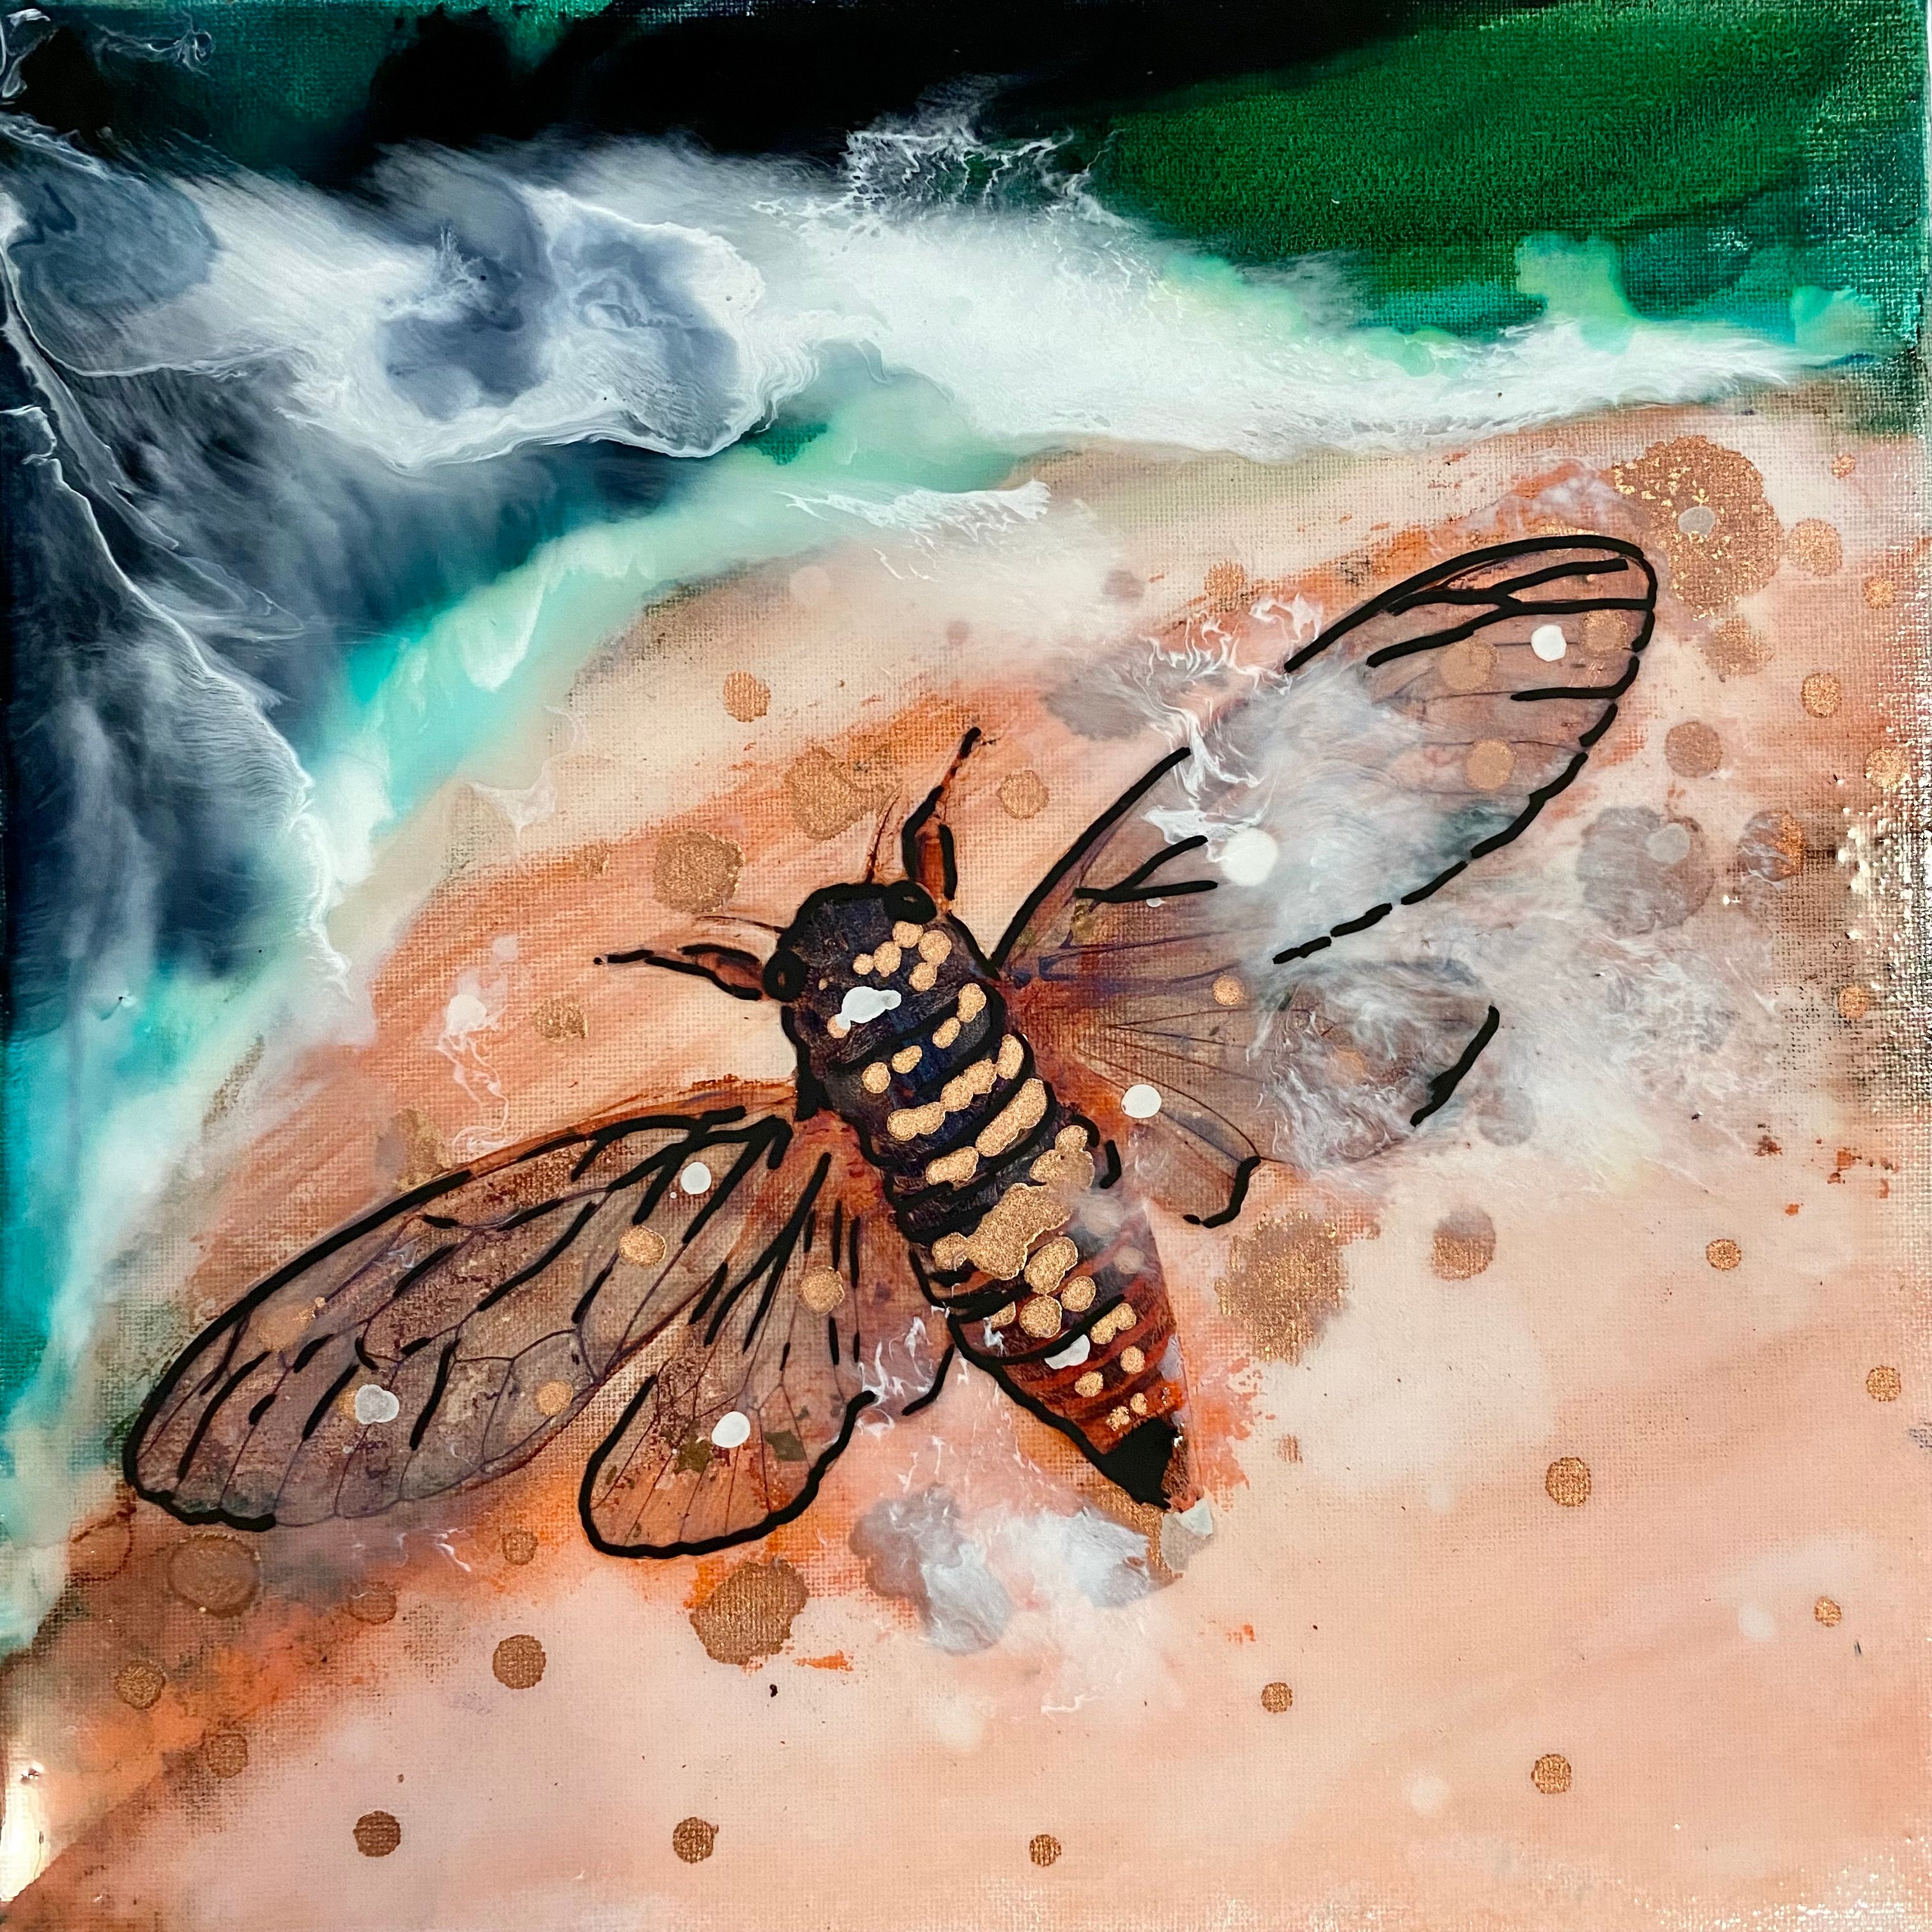 Close to Extinction - Cicada. Seascape. Original Artwork.